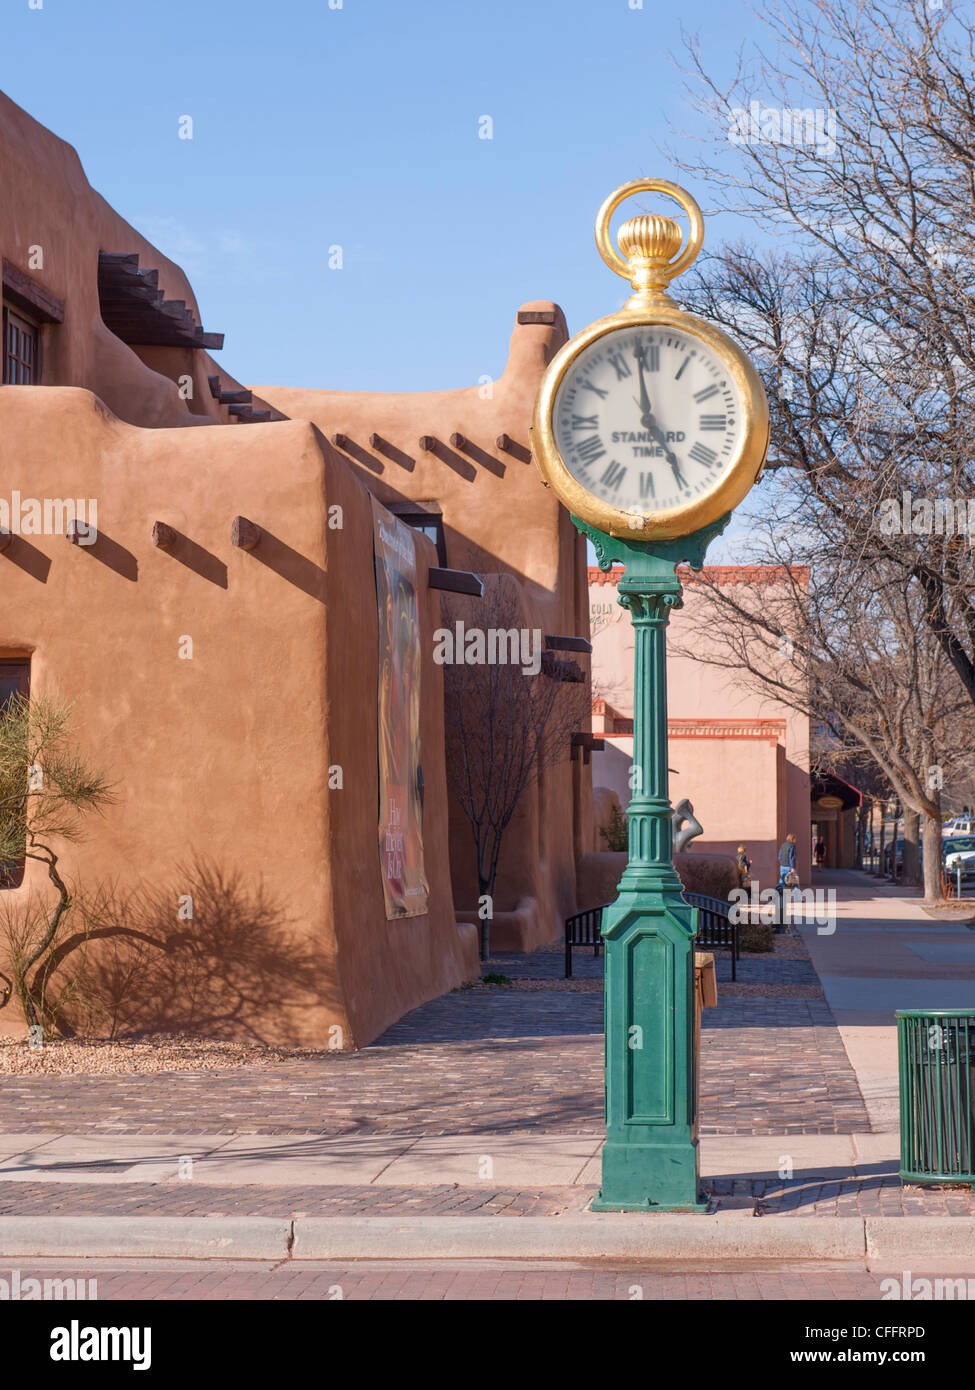 Spitz clock, Santa Fe Plaza Stock Photo